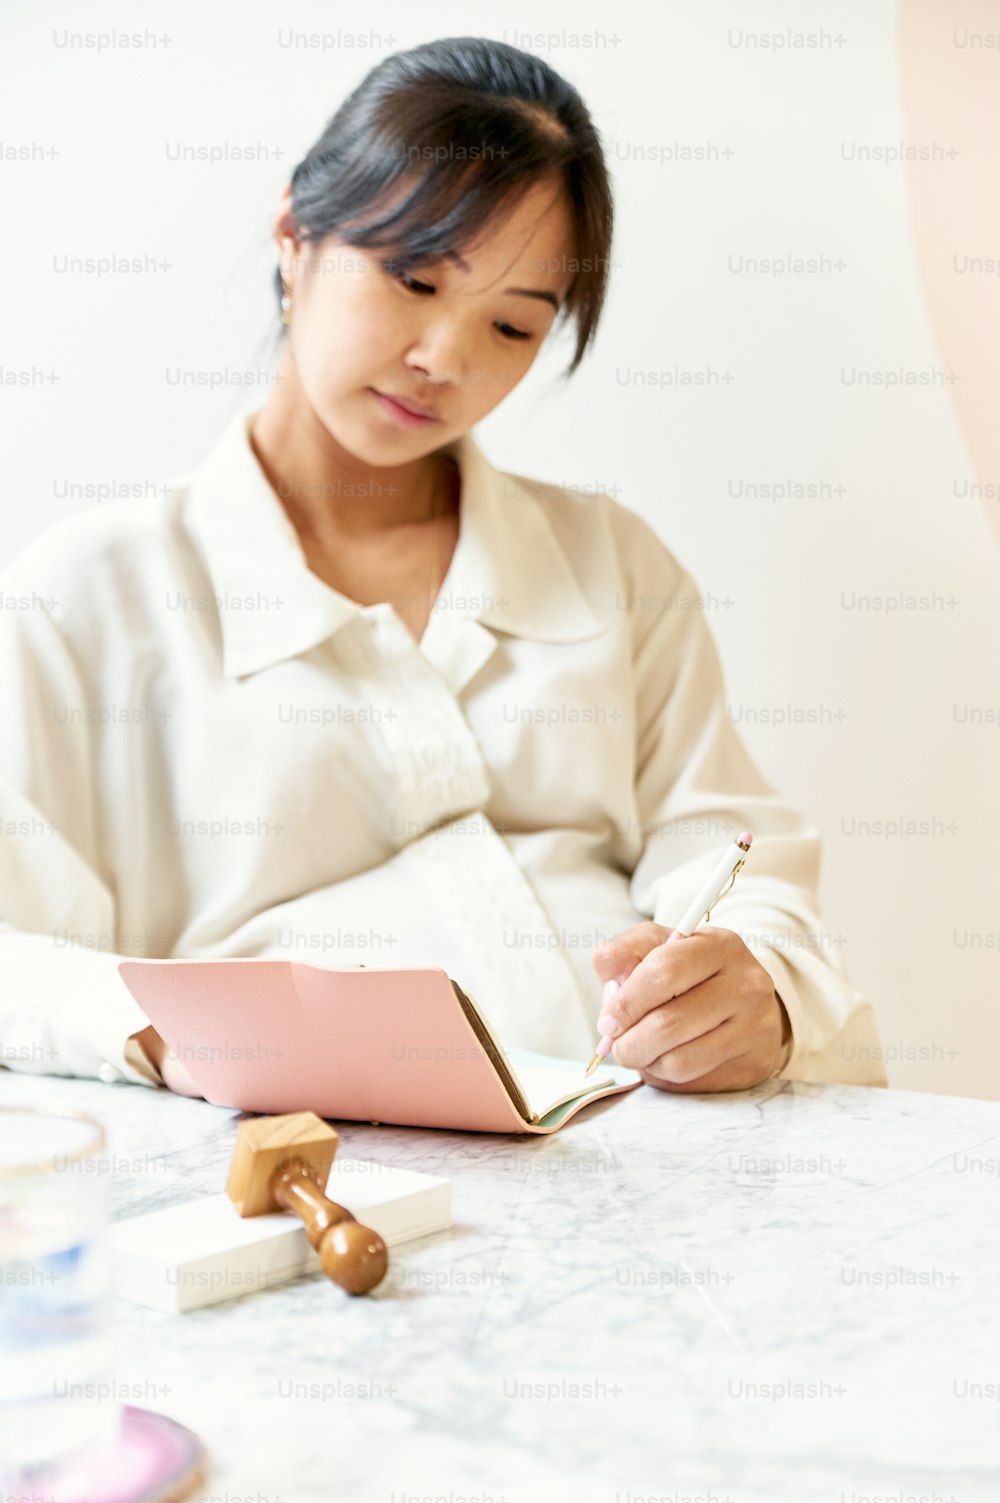 Una mujer sentada en una mesa escribiendo en un cuaderno